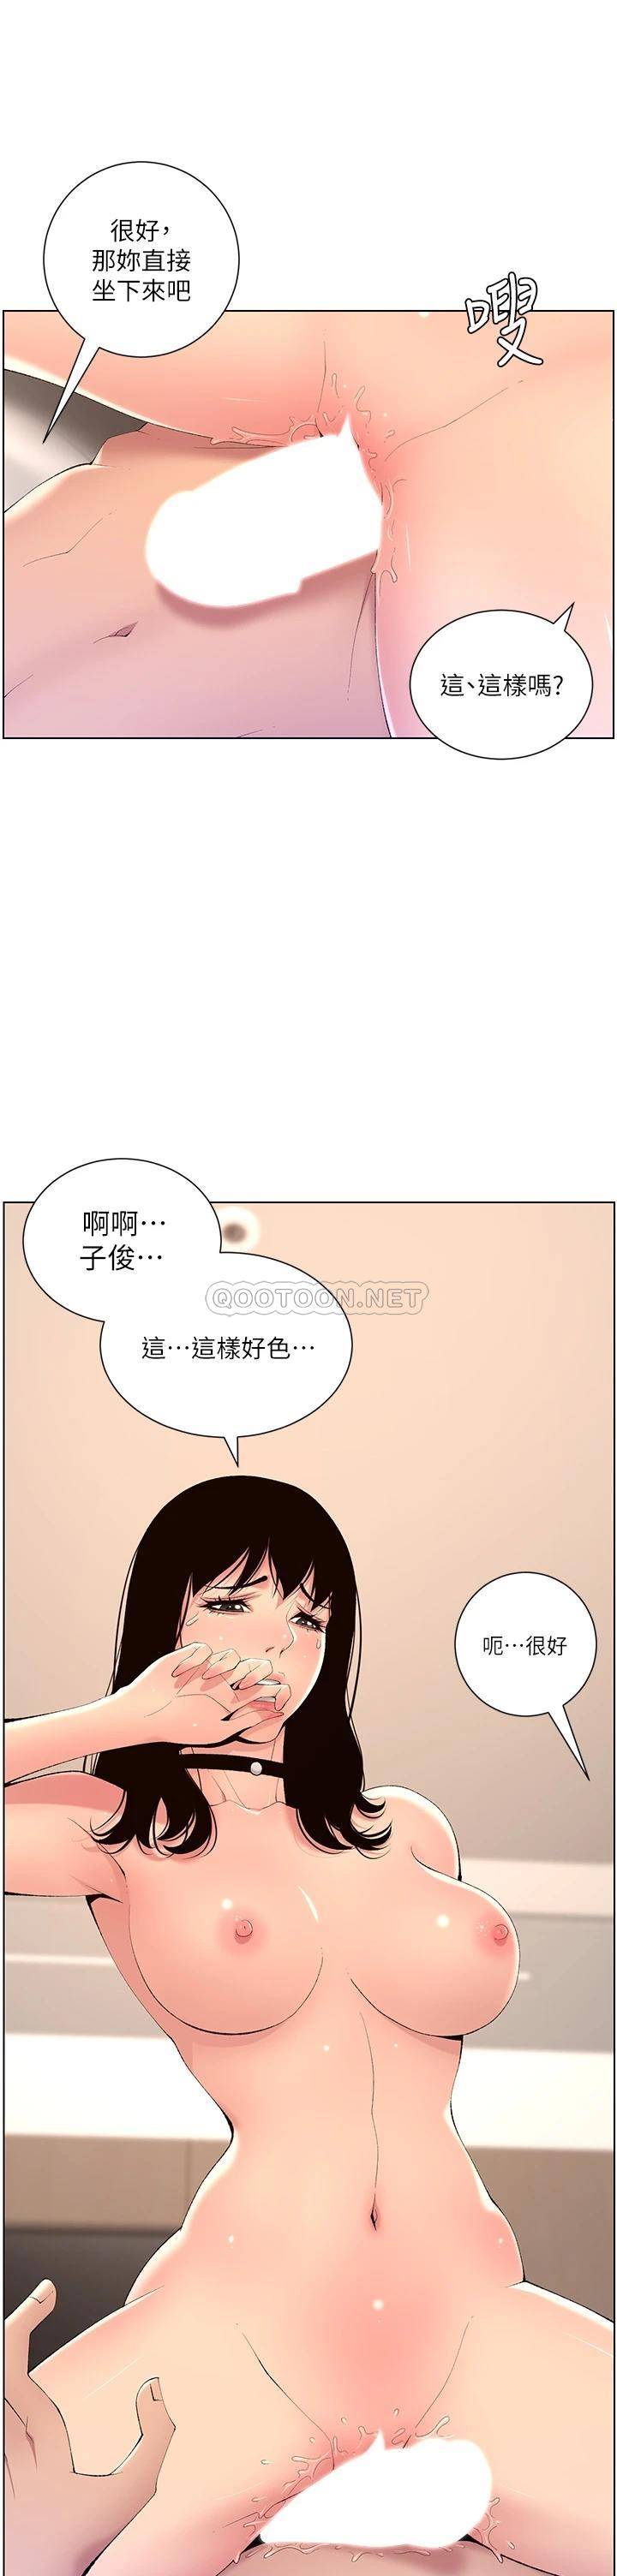 韩国污漫画 帝王App 第29话 棒棒太大塞不进来! 22